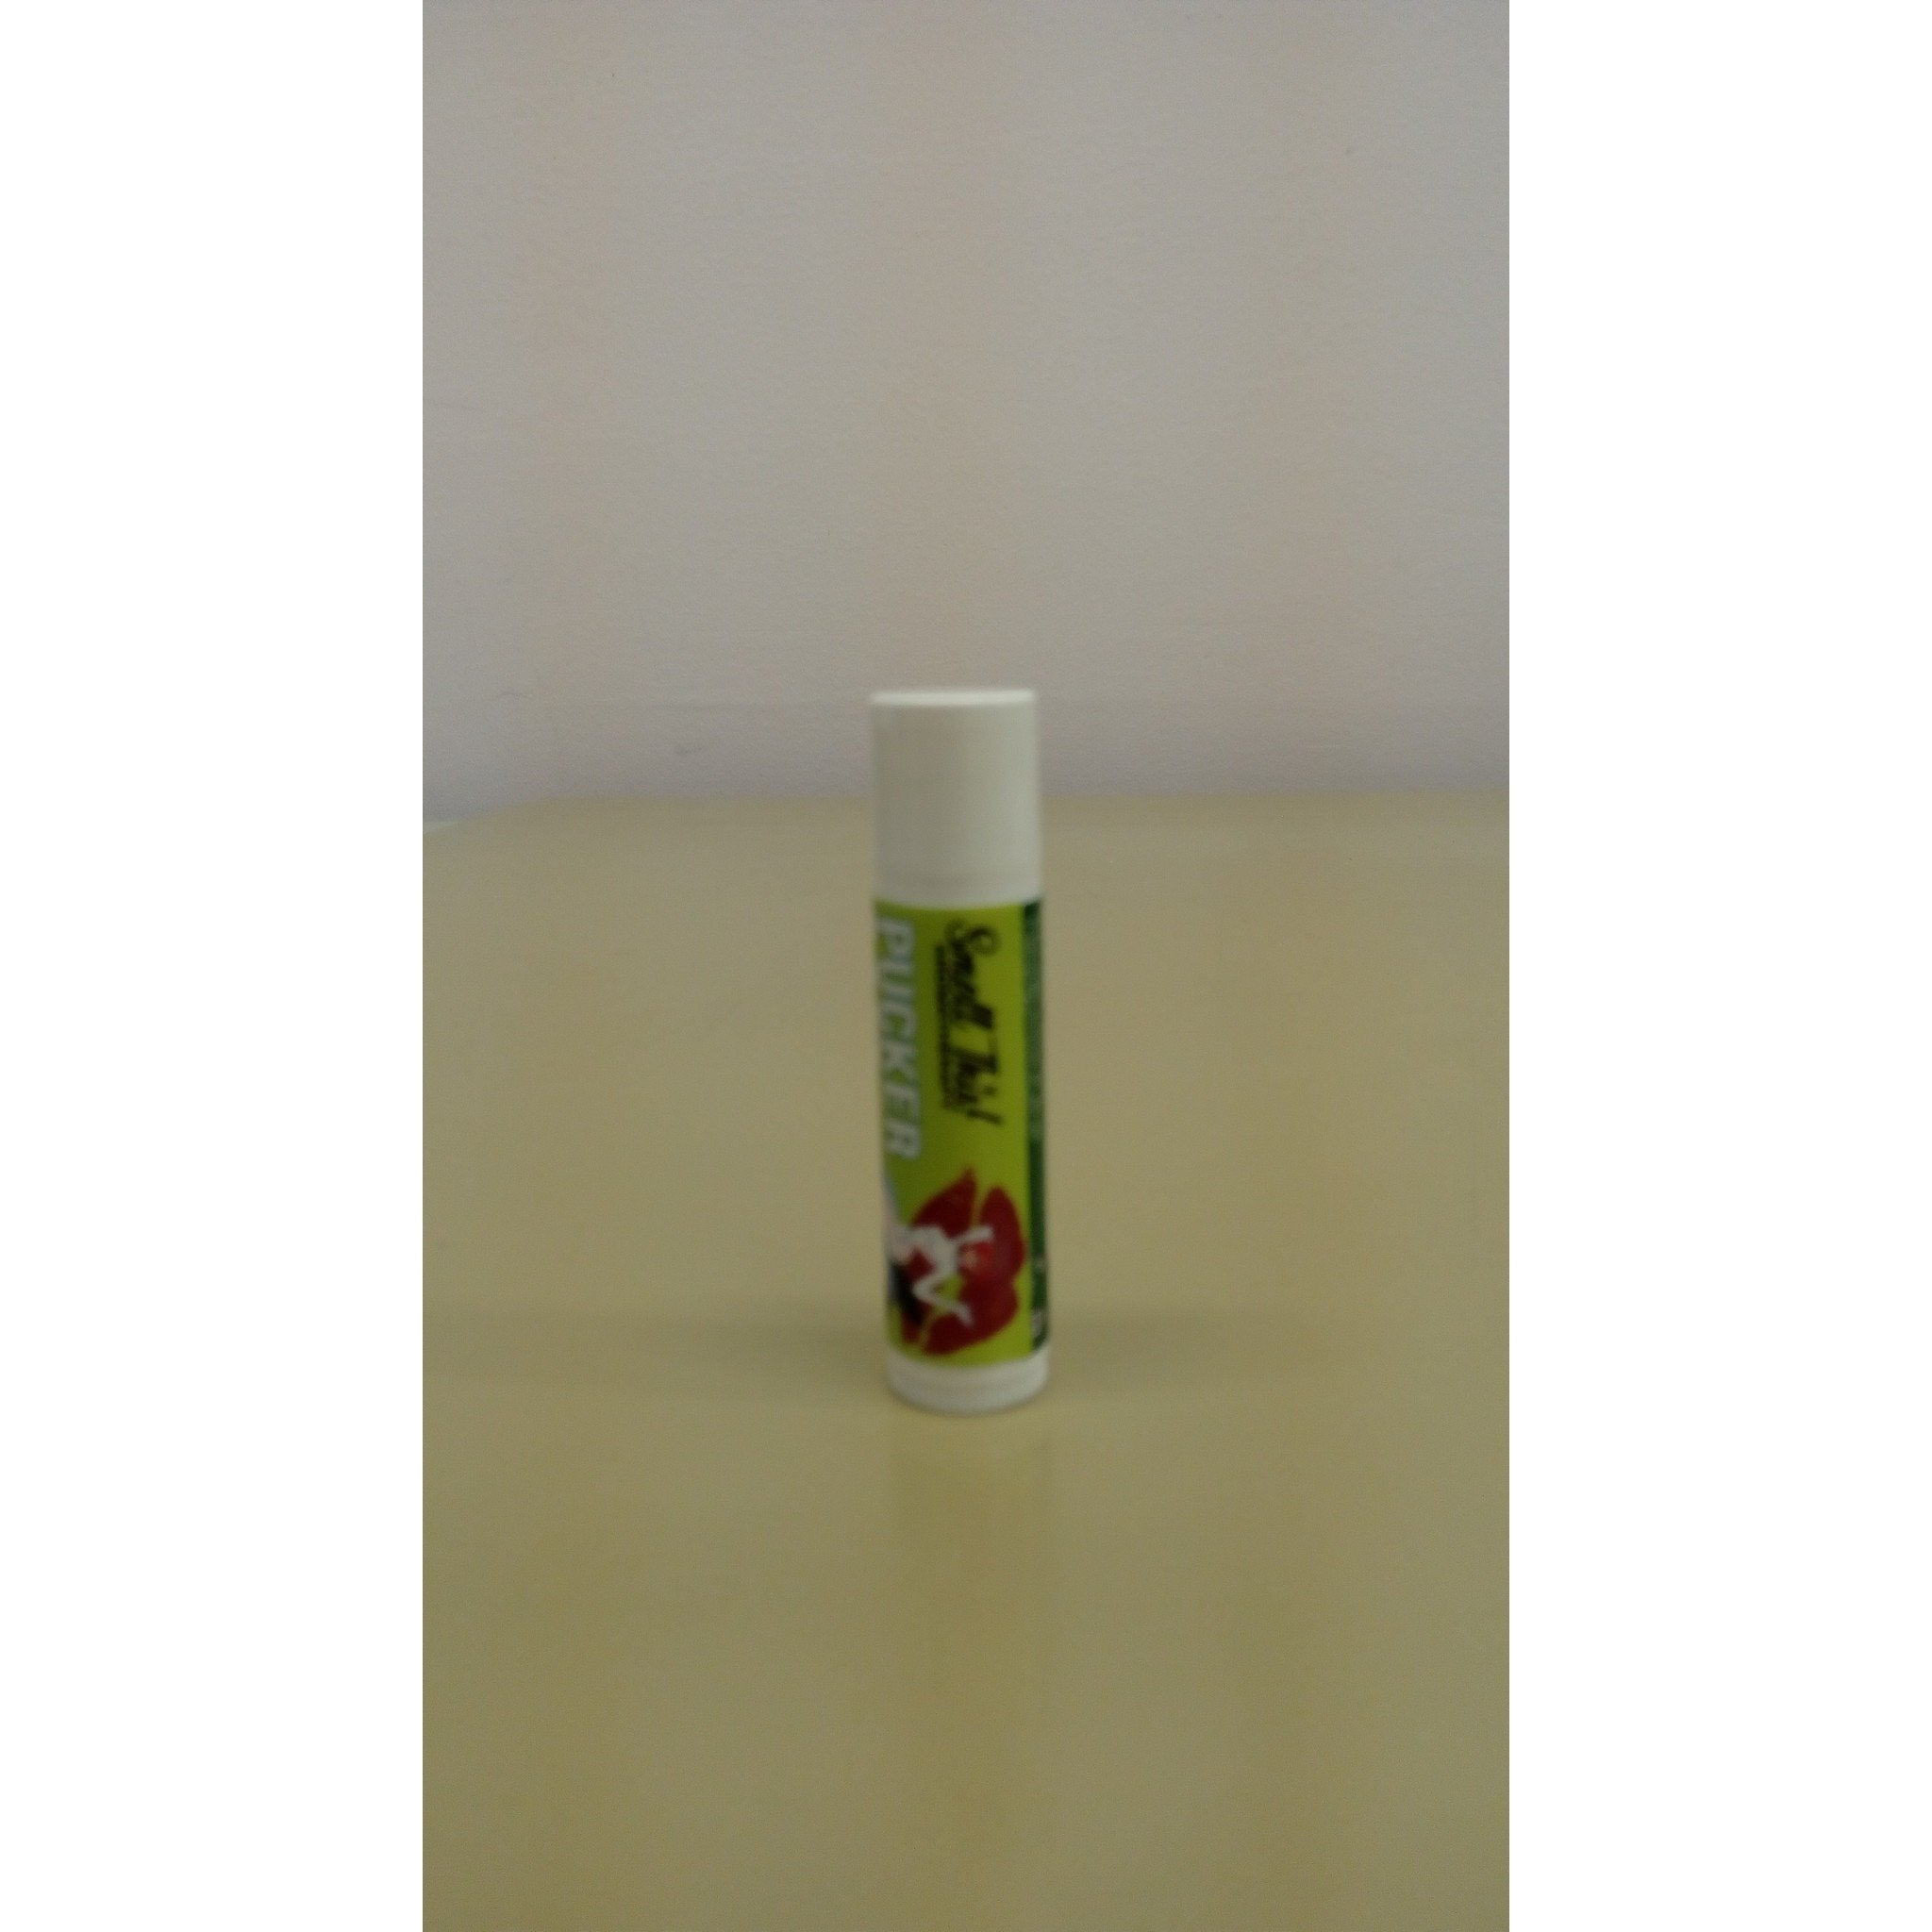 Smell This - Pucker Up Lip Balmn - Breizh Esthetic & Salon Supply